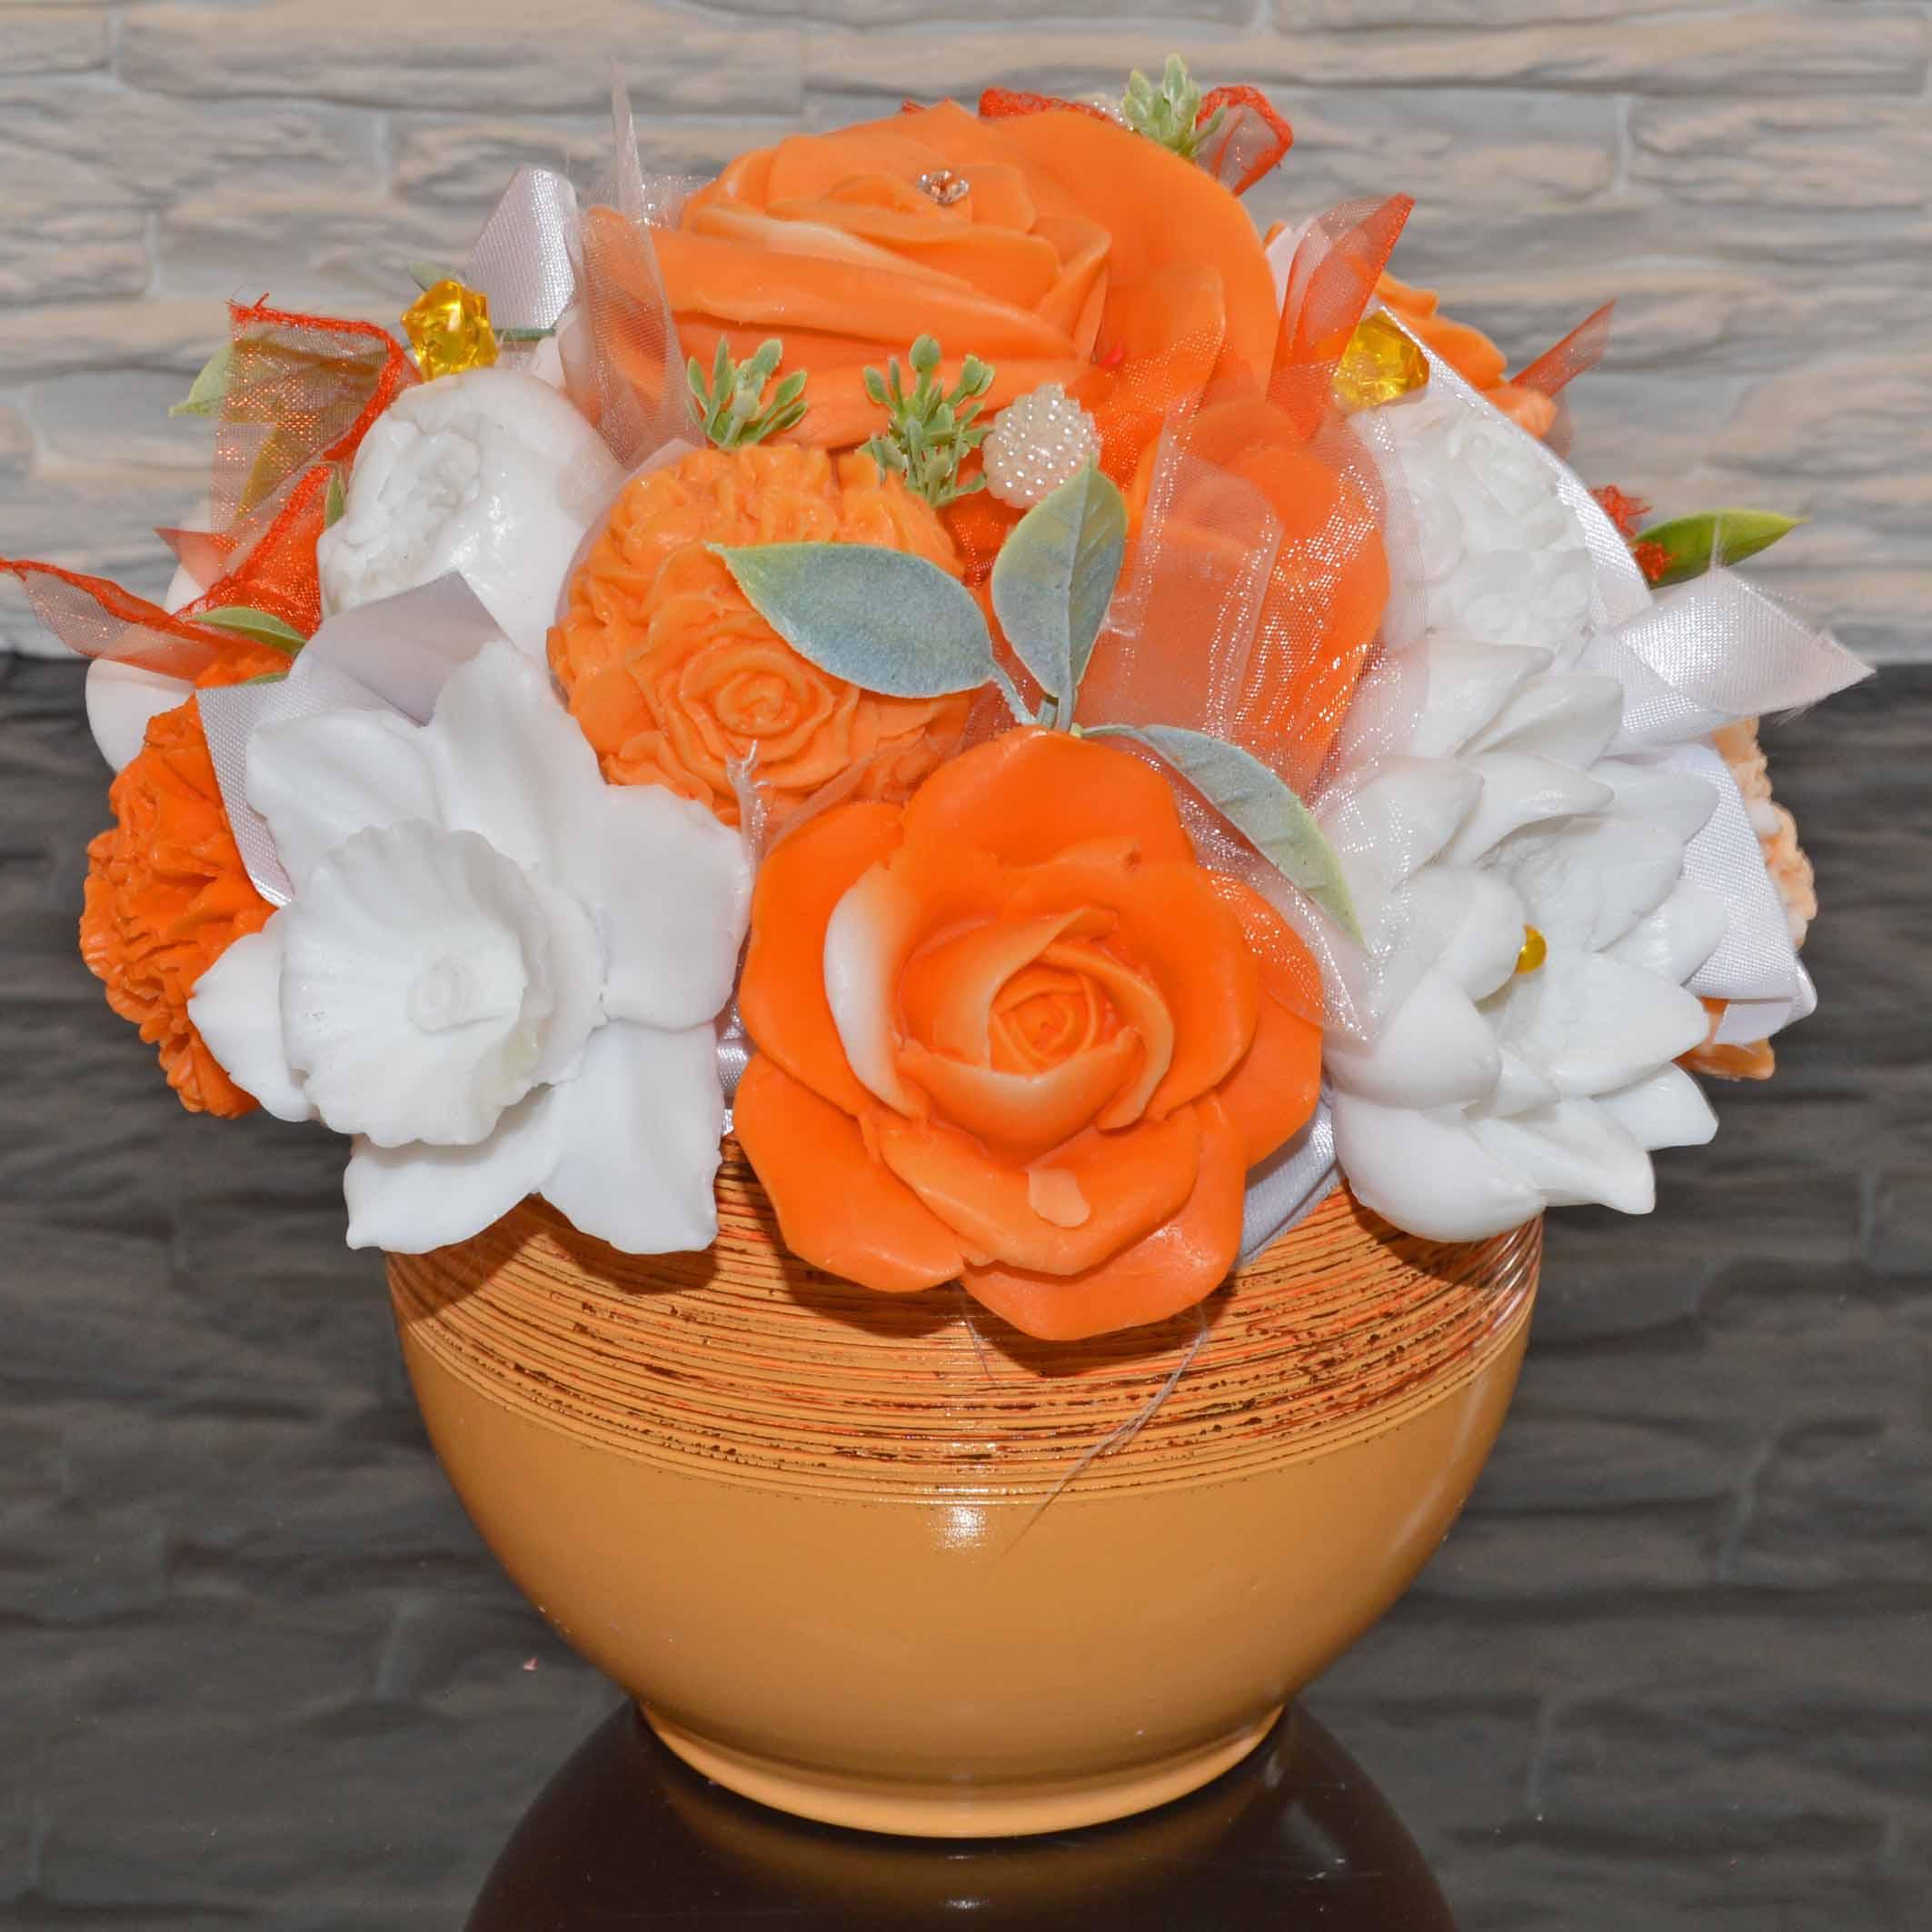 Mýdlová kytice v keramickém květináči - oranžová, bílá